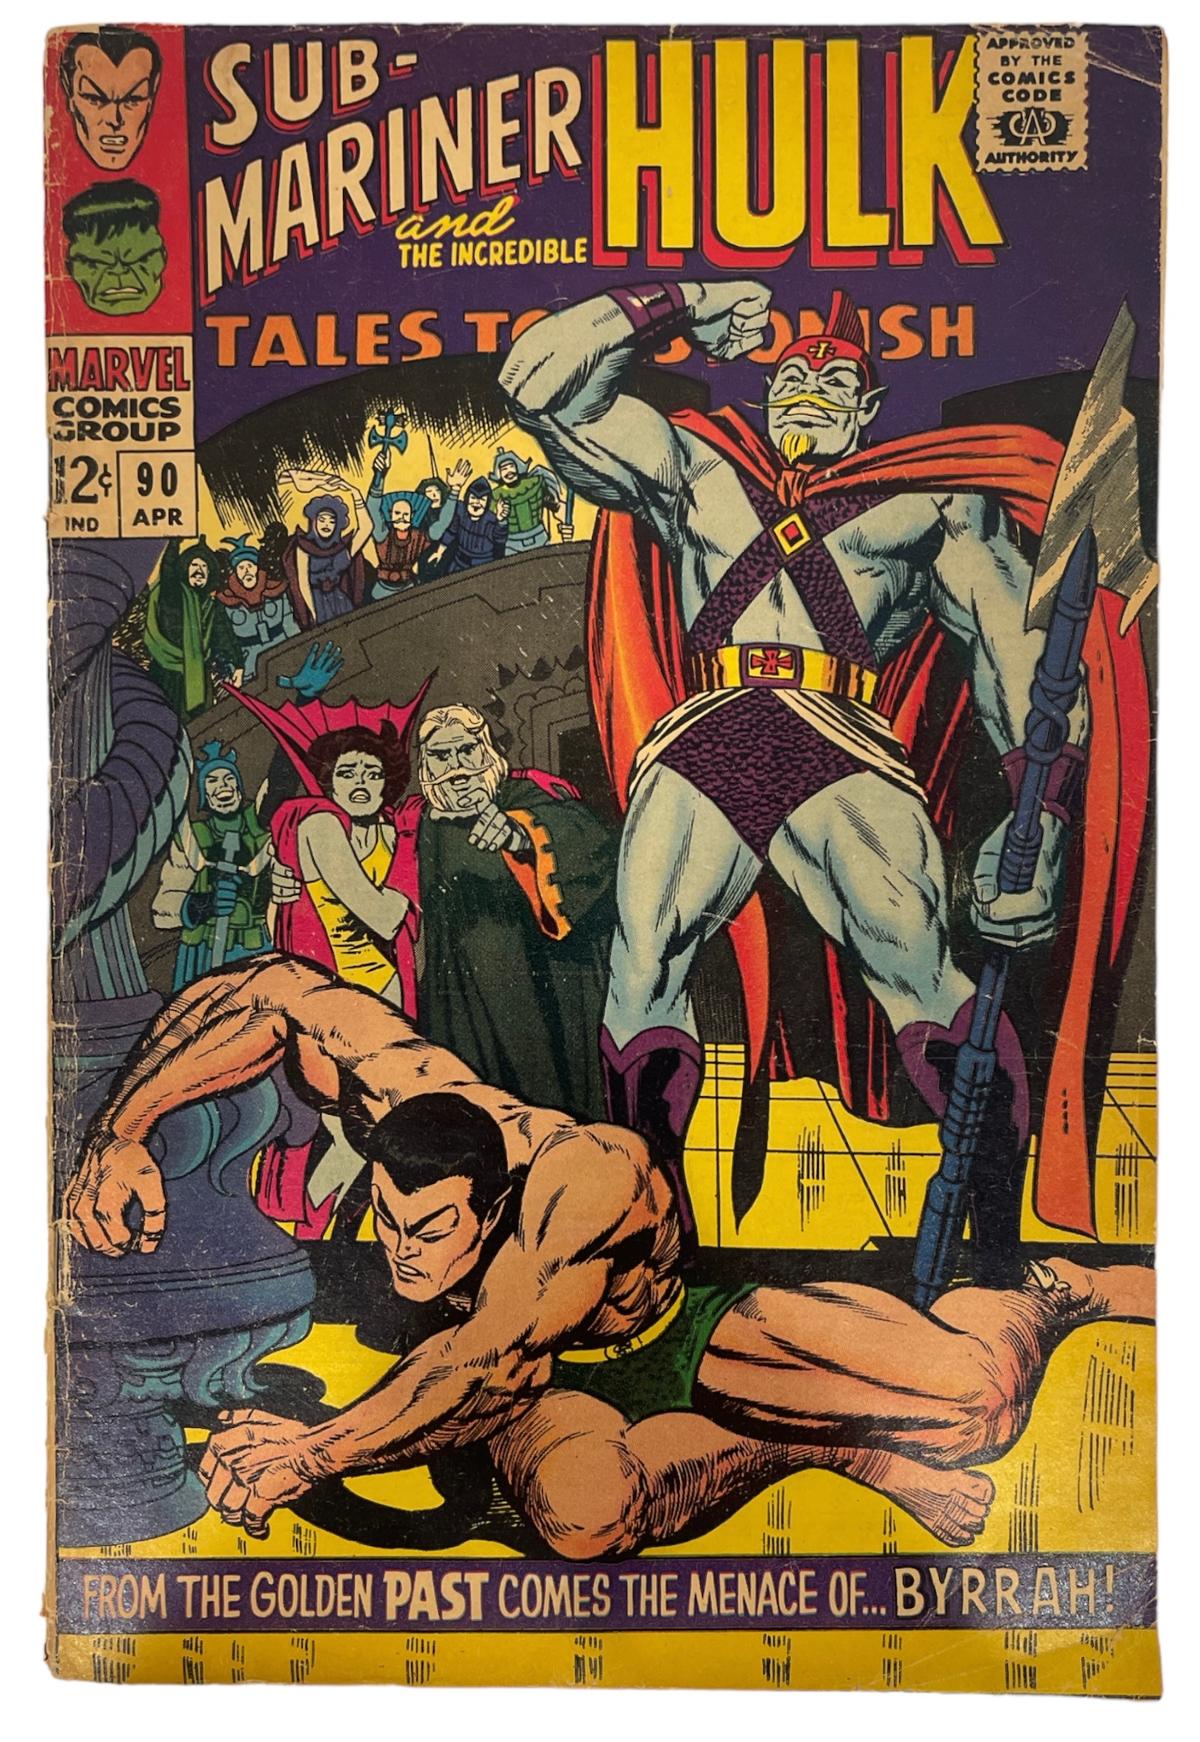 Vintage Marvel Comics - Sub-Mariner and The Incredible Hulk Tales No.90